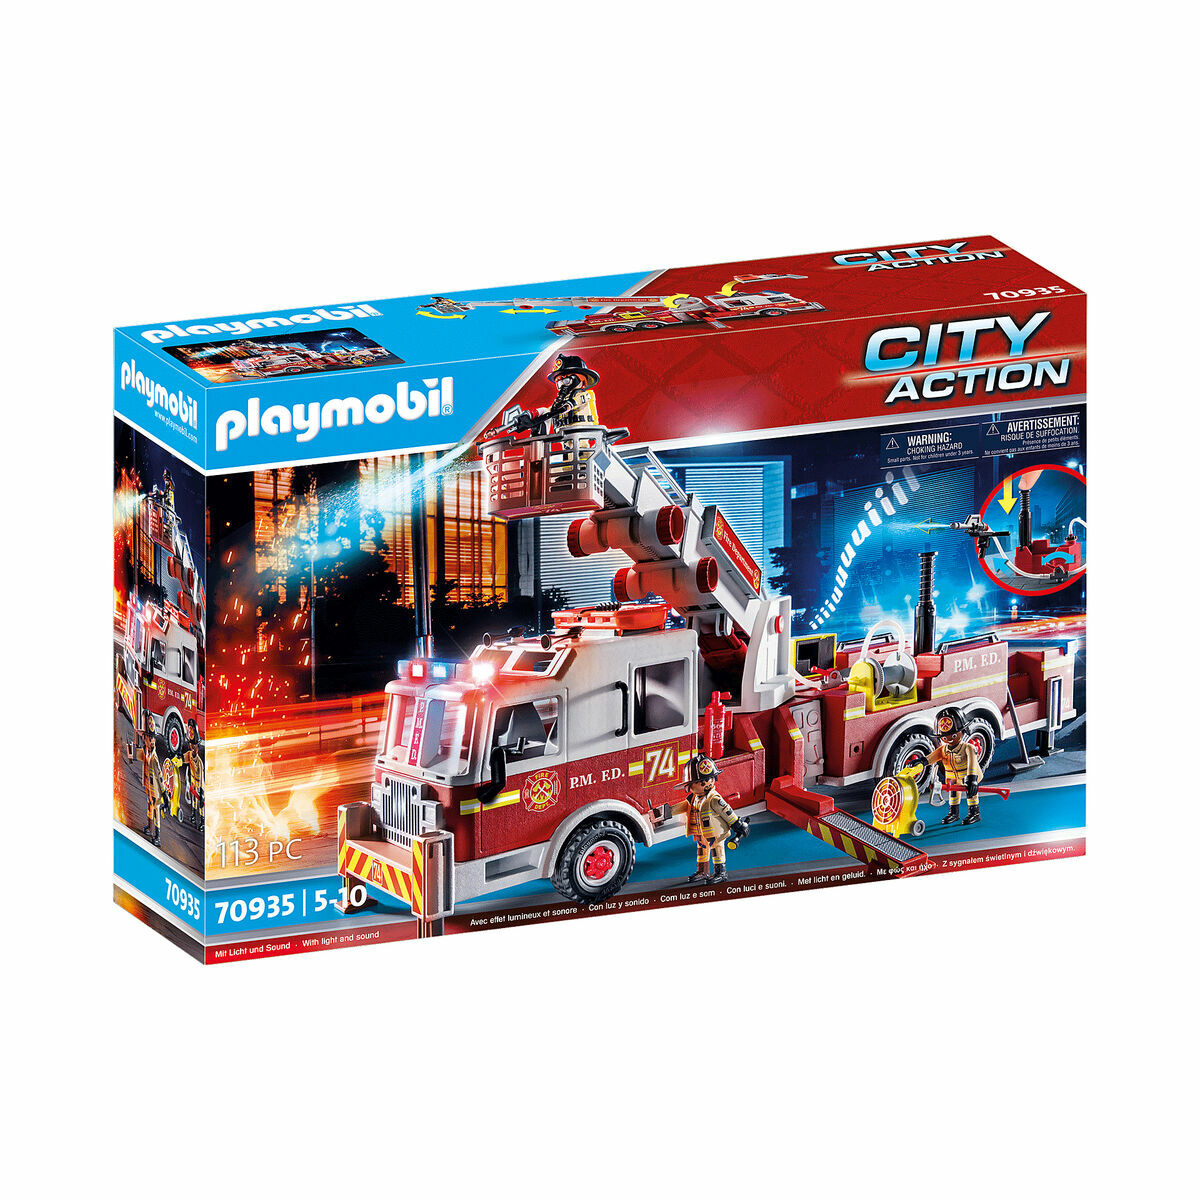 Set de Jucării cu Vehicule Playmobil US Tower Ladder City Action 70935 Camion de Pompieri (113 pcs)